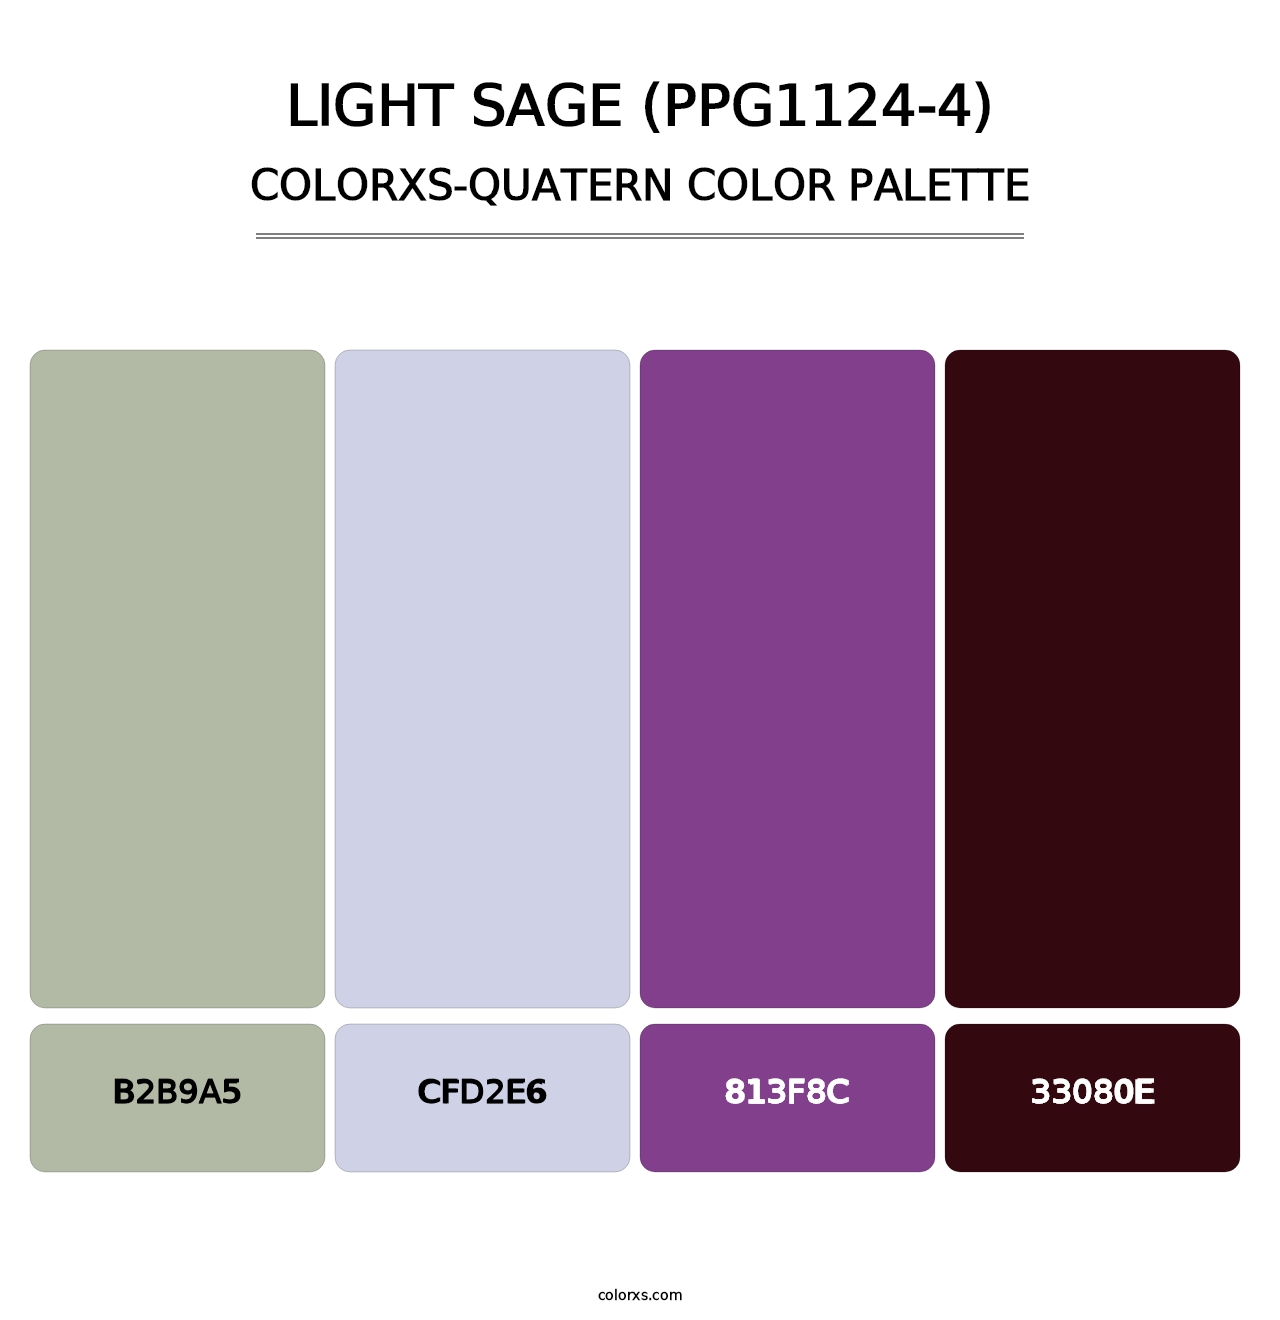 Light Sage (PPG1124-4) - Colorxs Quatern Palette